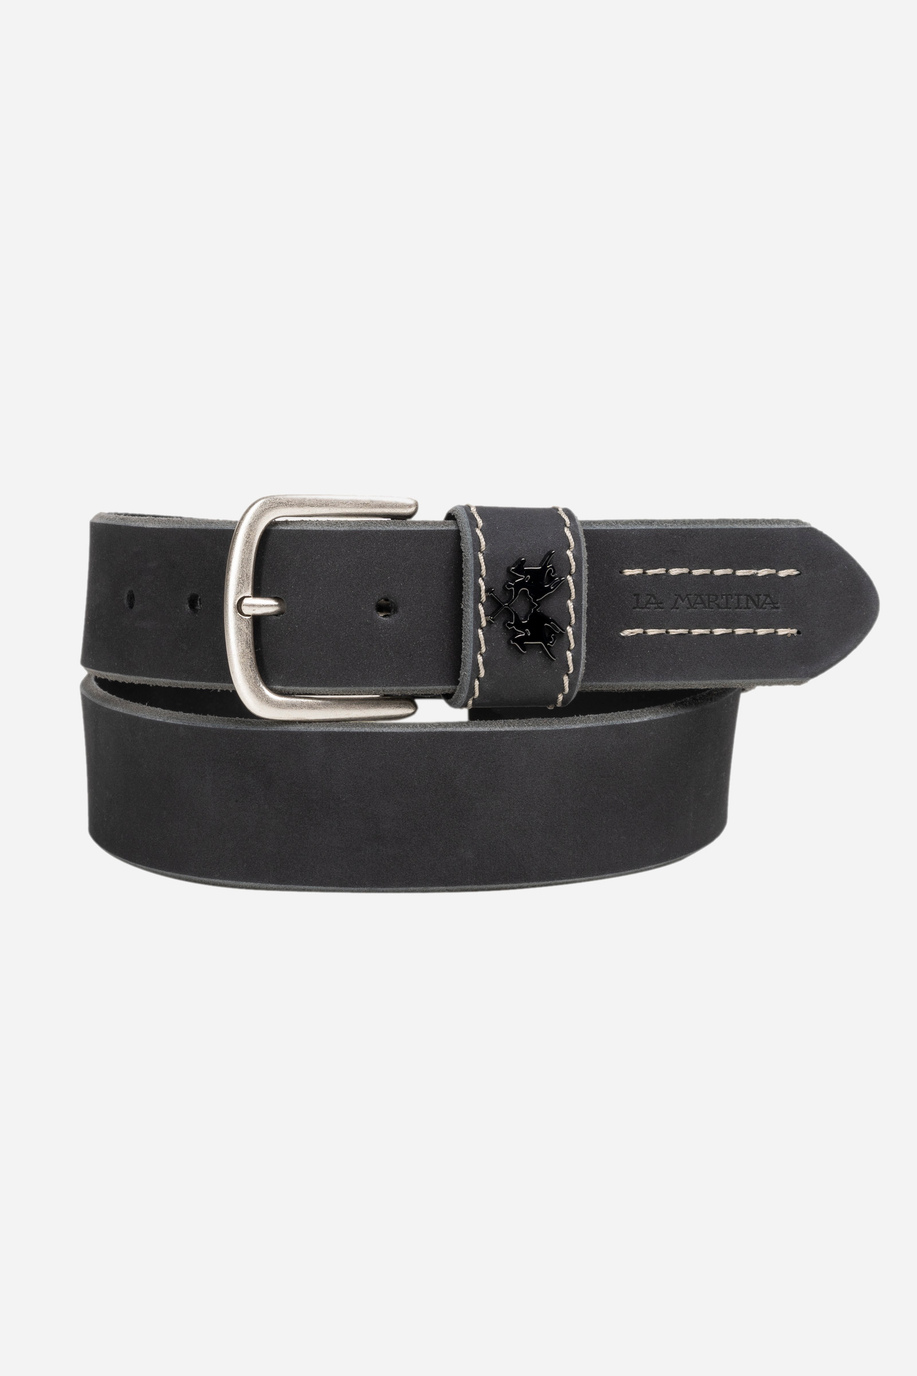 Black leather belt - Belts | La Martina - Official Online Shop